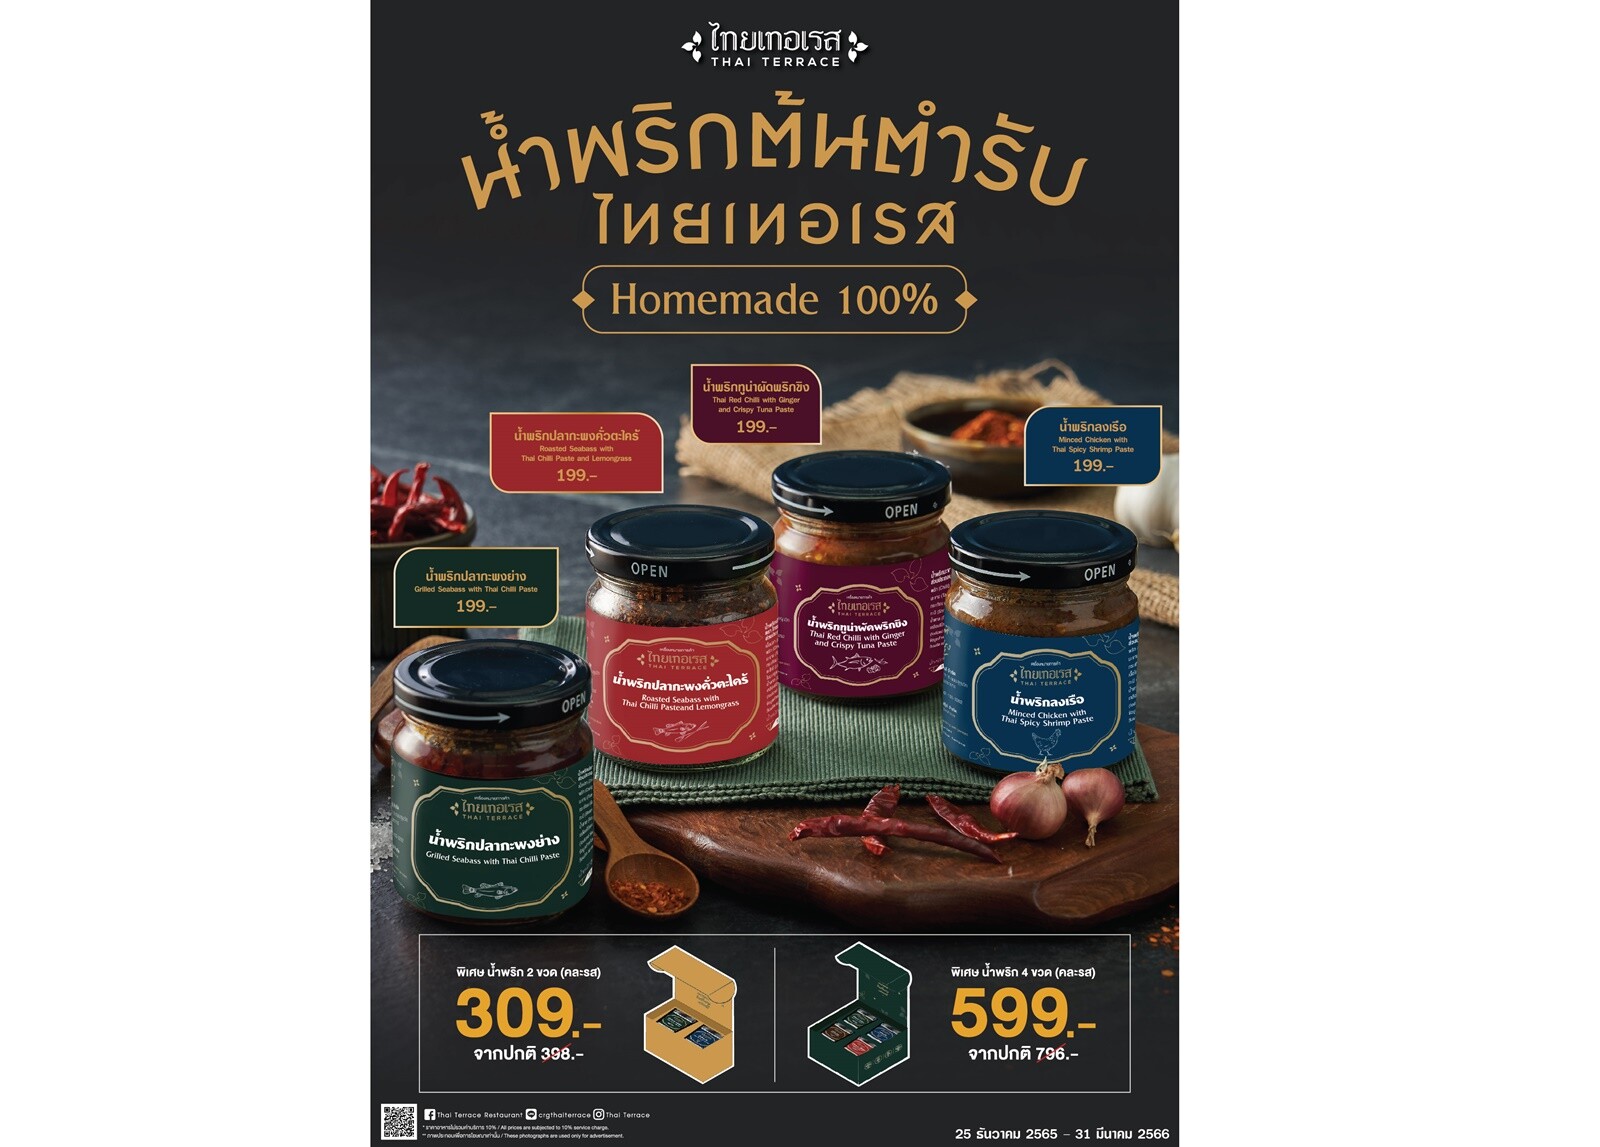 ไทยเทอเรส ชวนส่งมอบ "น้ำพริกตำรับไทยเทอเรส" เป็นของขวัญในเทศกาลปีใหม่นี้ กับ เมนูน้ำพริกรสเด็ดดั้งเดิมแบบไทย Homemade 100%